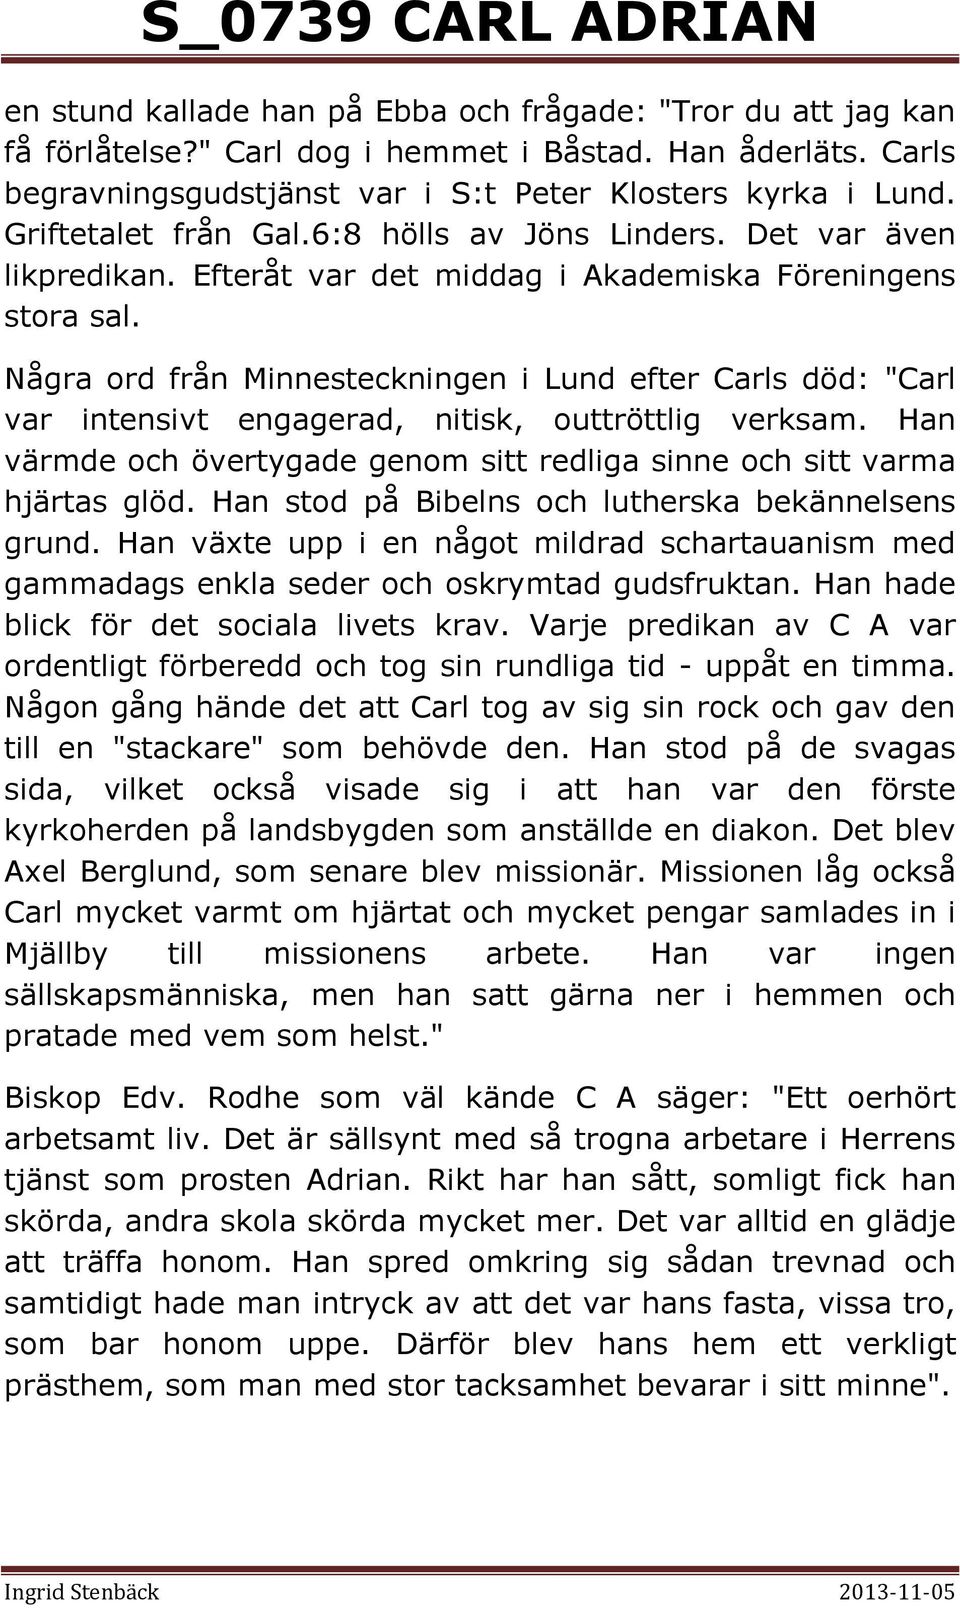 Några ord från Minnesteckningen i Lund efter Carls död: "Carl var intensivt engagerad, nitisk, outtröttlig verksam. Han värmde och övertygade genom sitt redliga sinne och sitt varma hjärtas glöd.